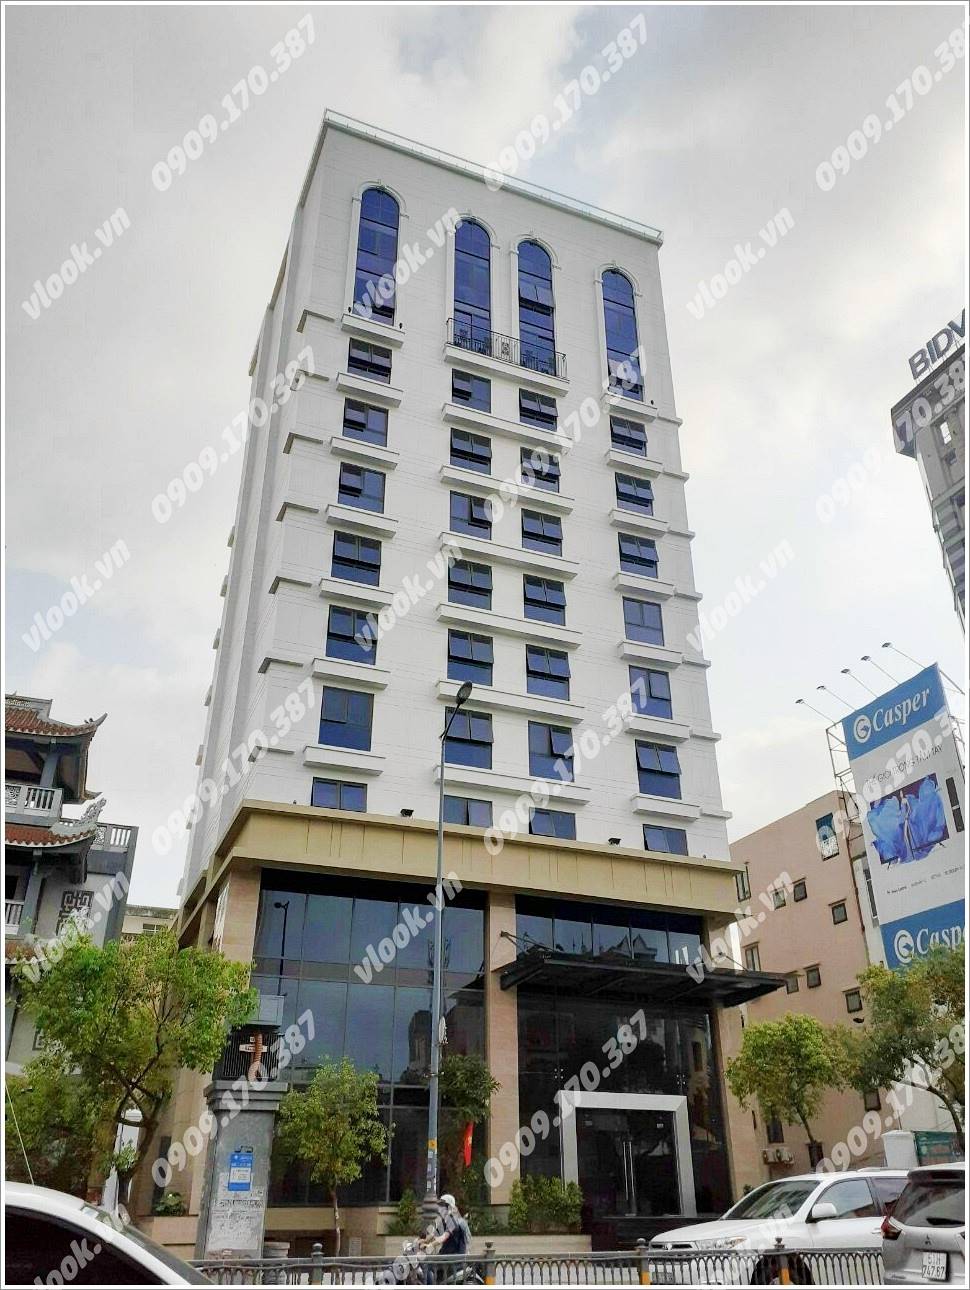 Cao ốc văn phòng cho thuê Tòa nhà Văn phòng Mộc Gia 292 NKKN, Nam Kỳ Khởi Nghĩa Quận 3, TP.HCM - vlook.vn